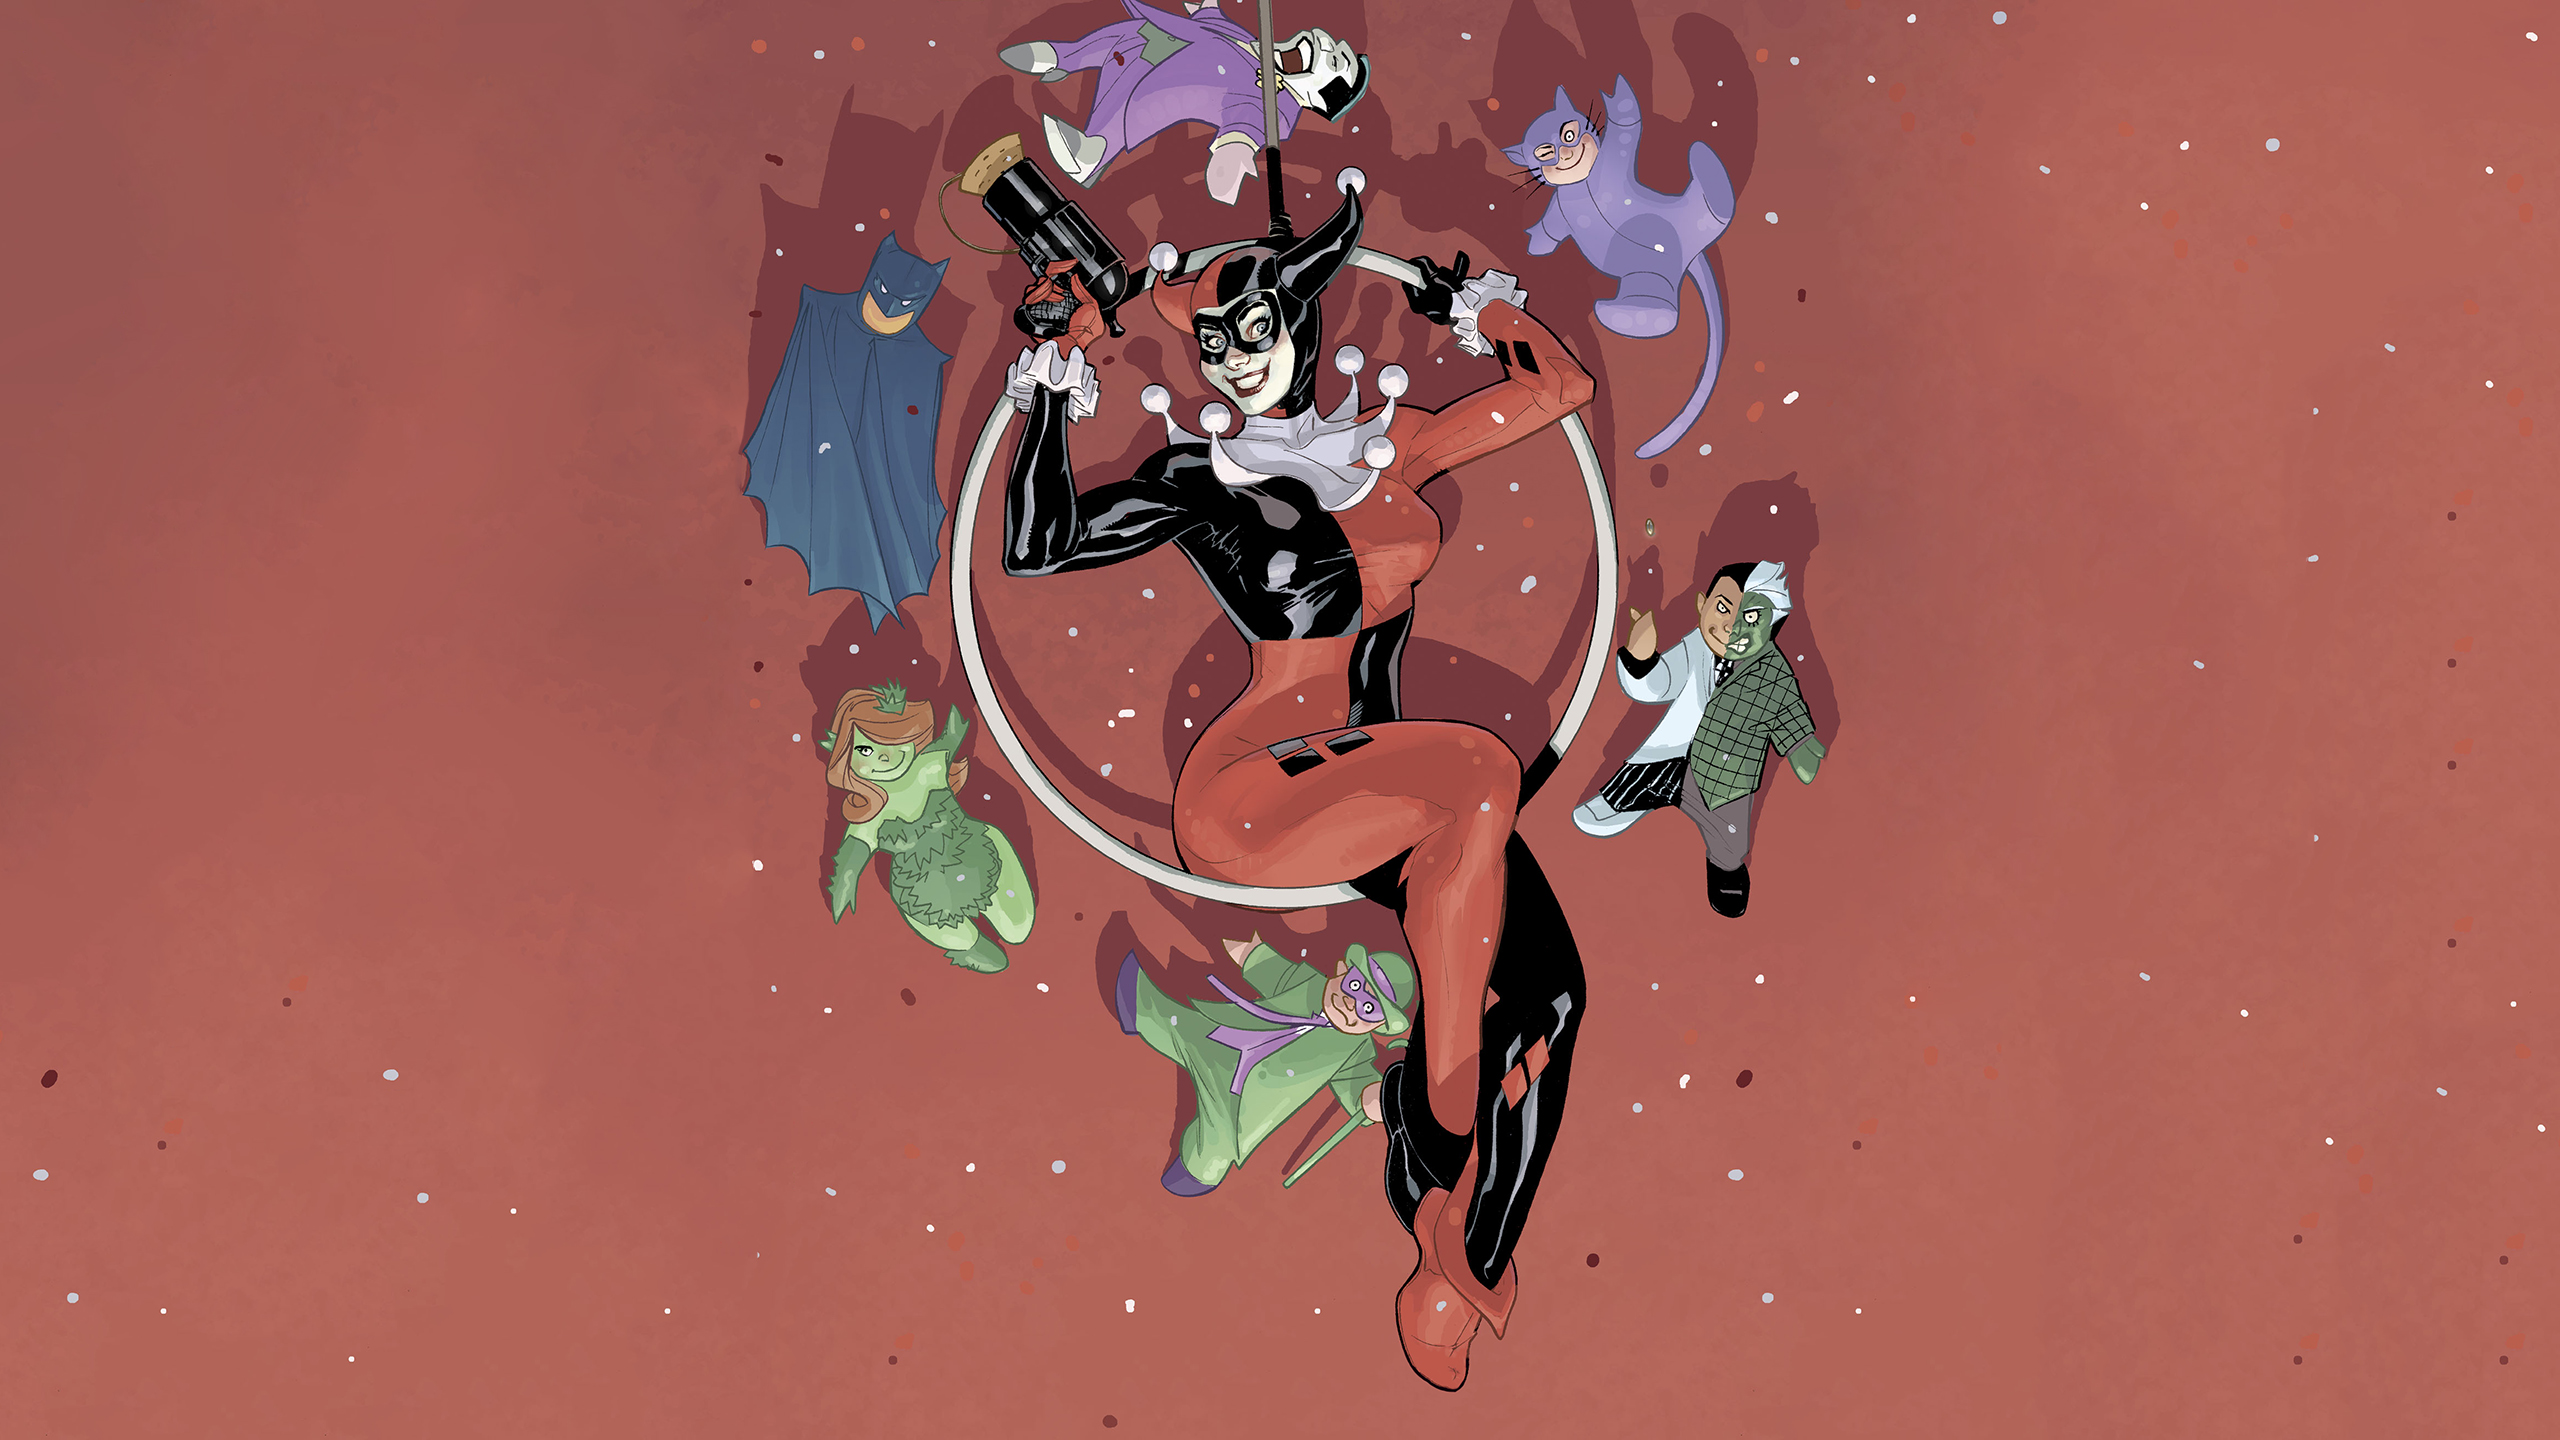 Harley Quinn DC Comics Joker The Riddler Poison Ivy Catwoman Batman 2021 2560x1440